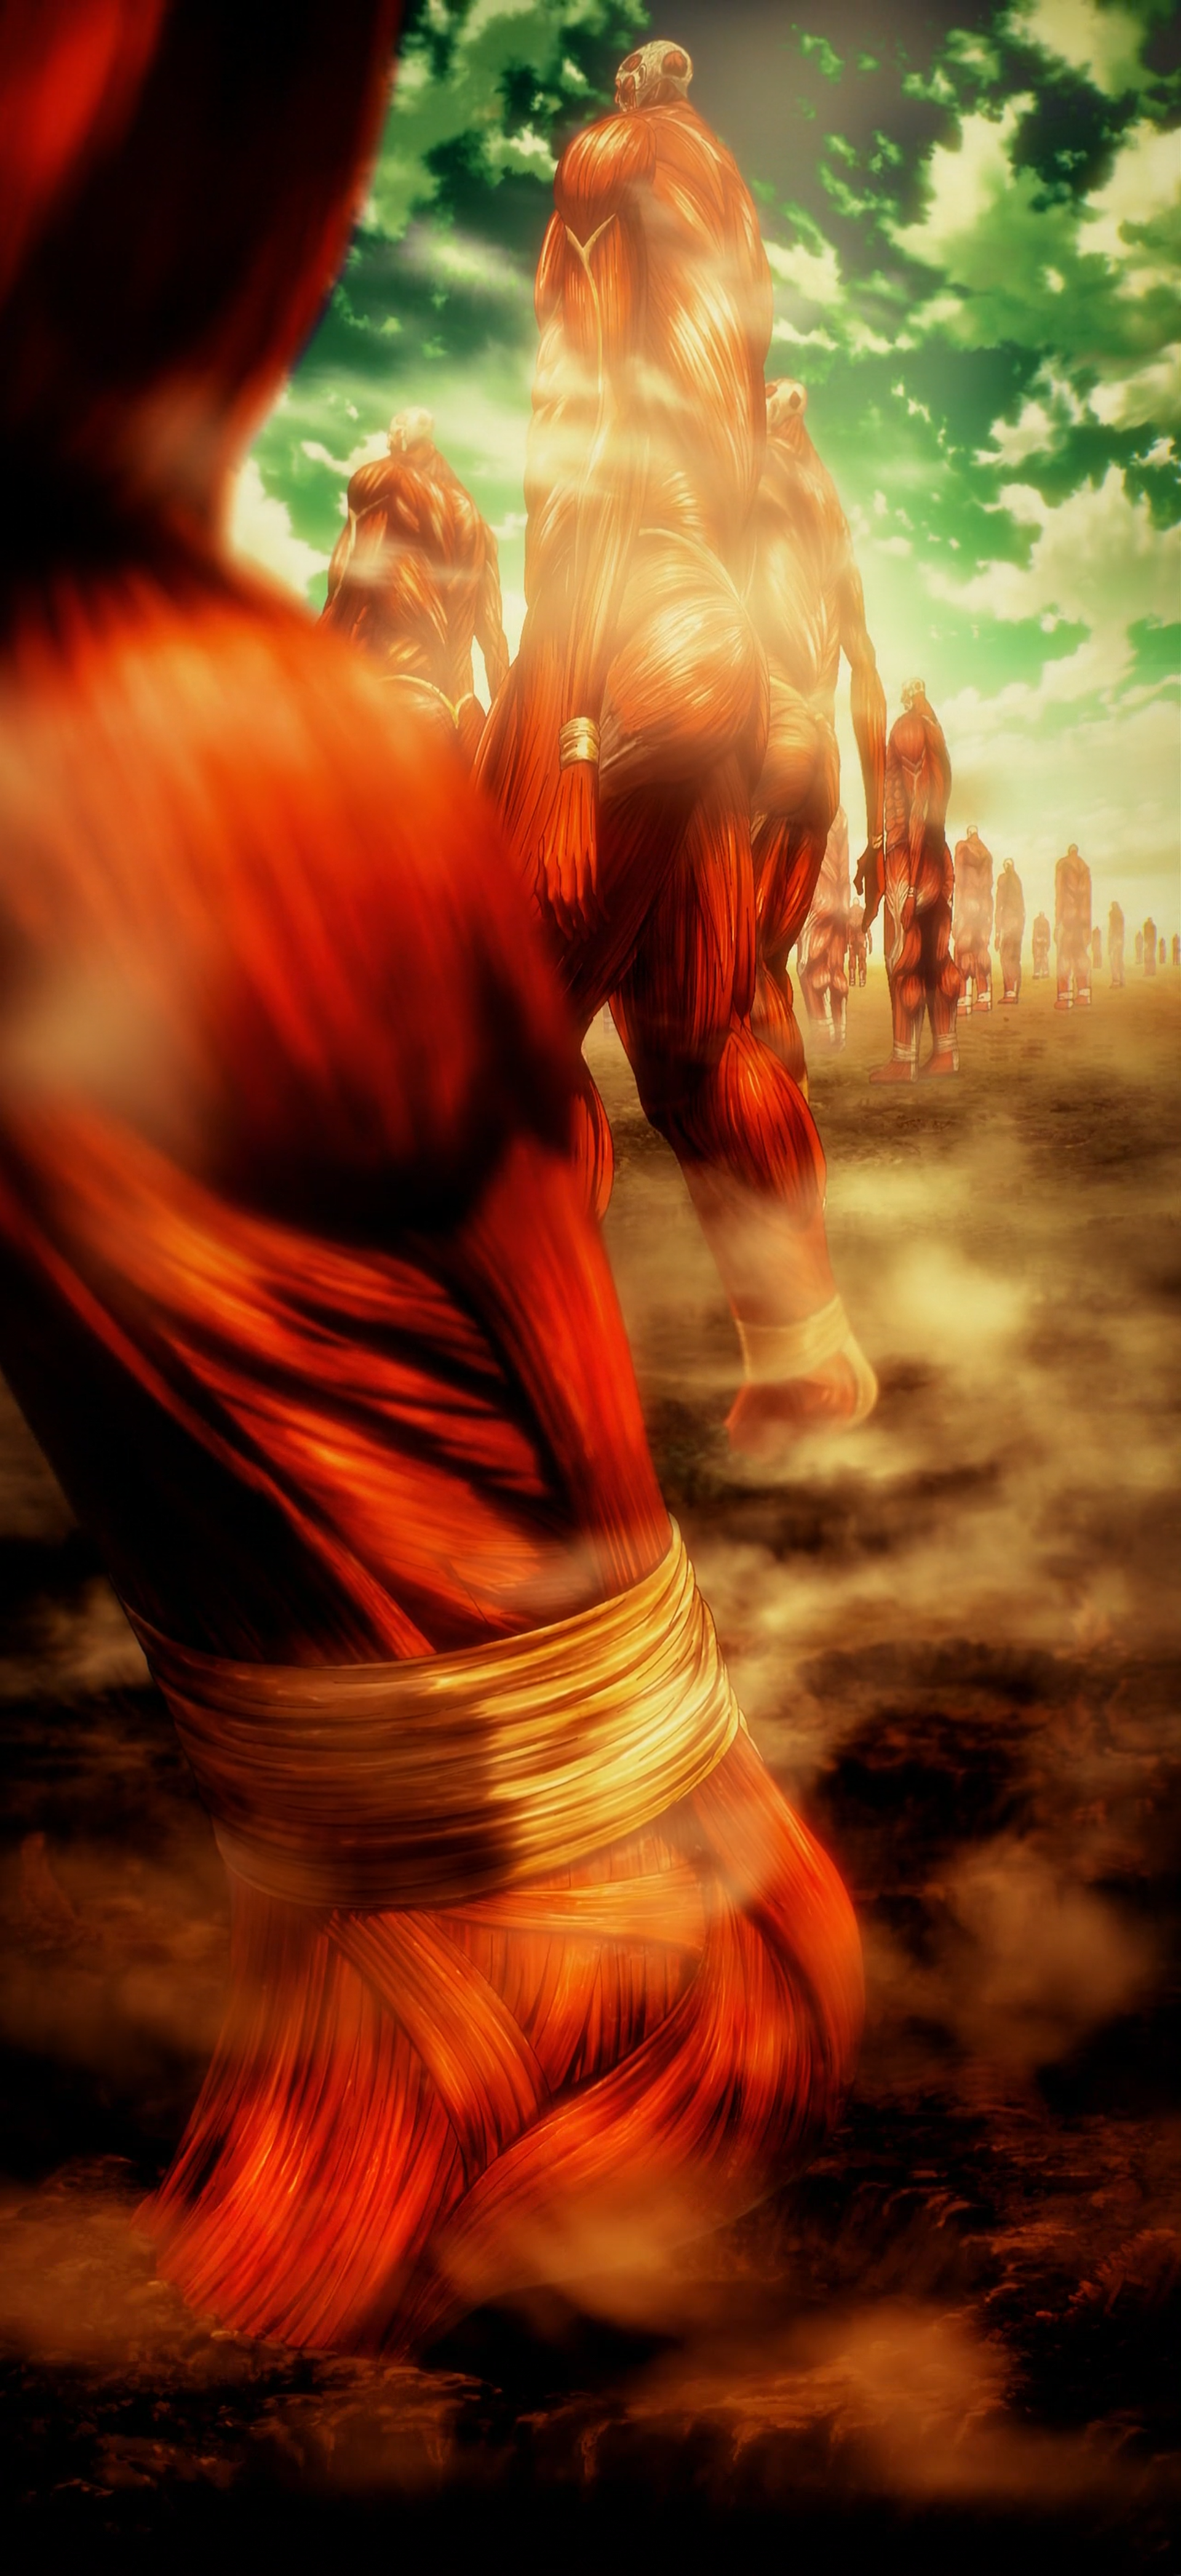 Attack on Titan Final Season (Dublado) - Eren vs Reiner e Porco